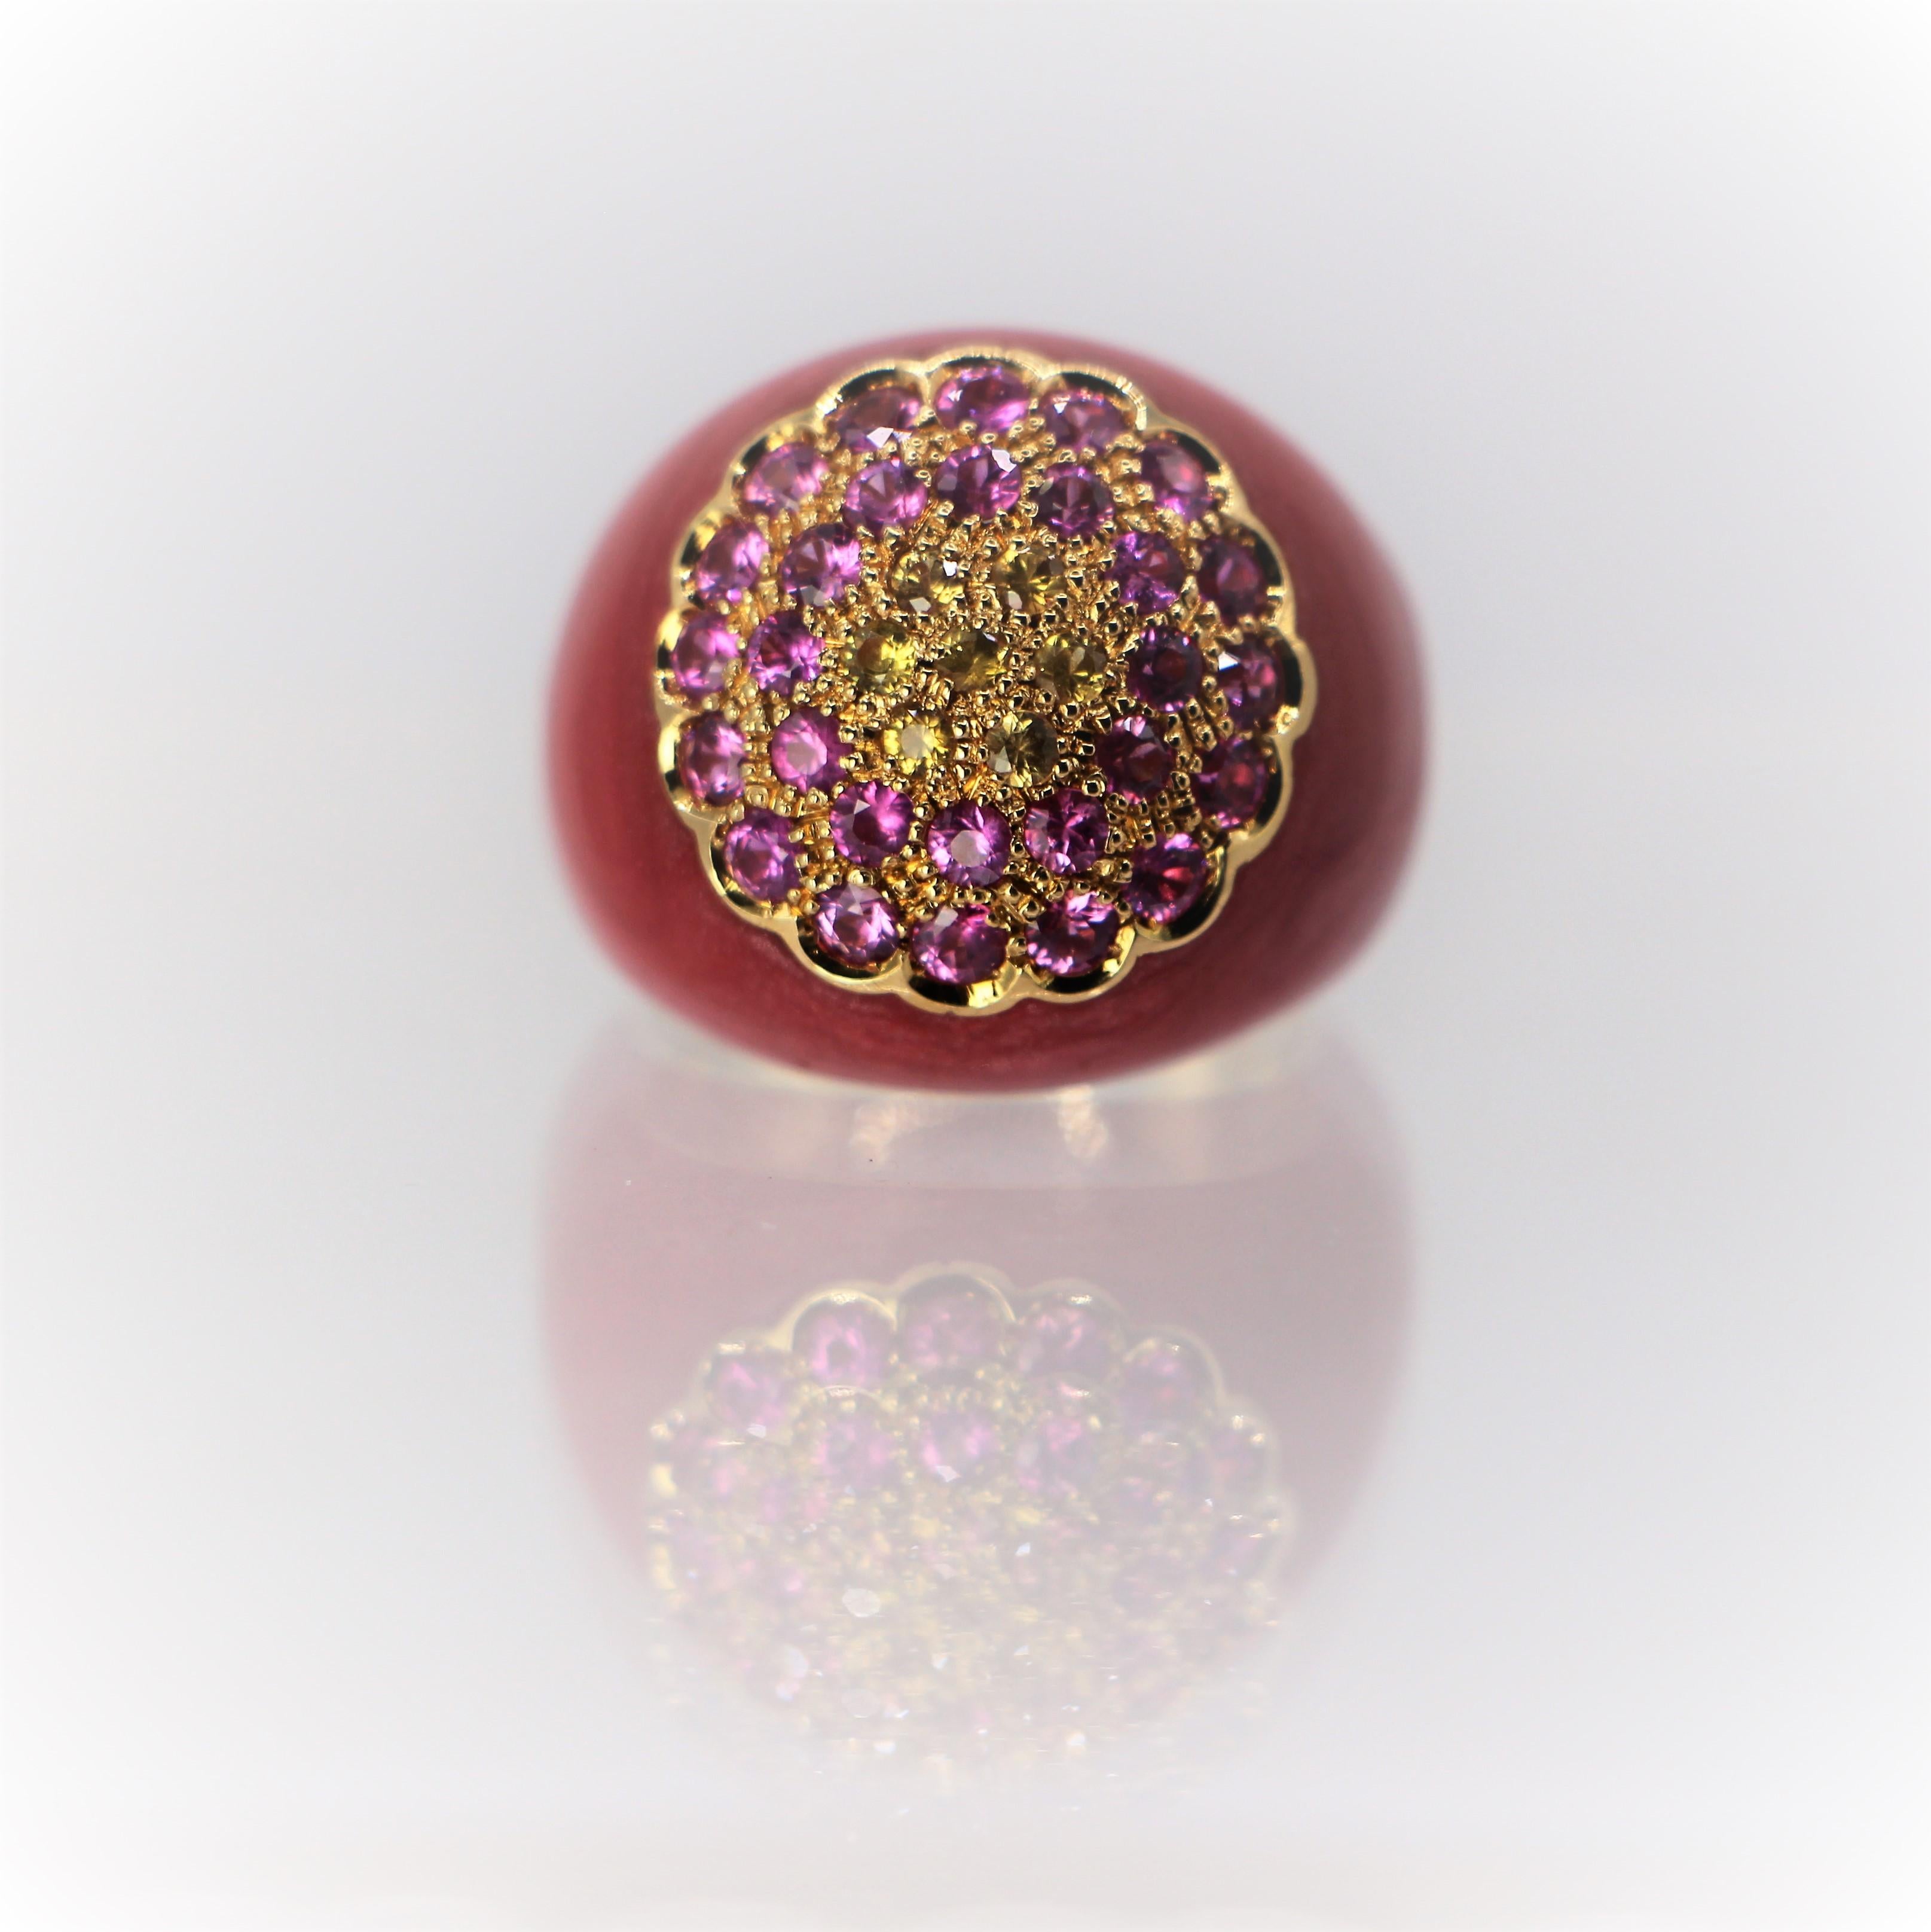 Kuppel-Emaille in Korallenrot Farbe Ring in 18Kt Gold. Ein Statement-Ring mit rosa und gelben Saphiren.
Dieser atemberaubende Ring ist handgefertigt in 18Kt Gold, Funktion Korallen Farbe Emaille. Die Emaille auf dem Ring ist exzellent, es ist  das